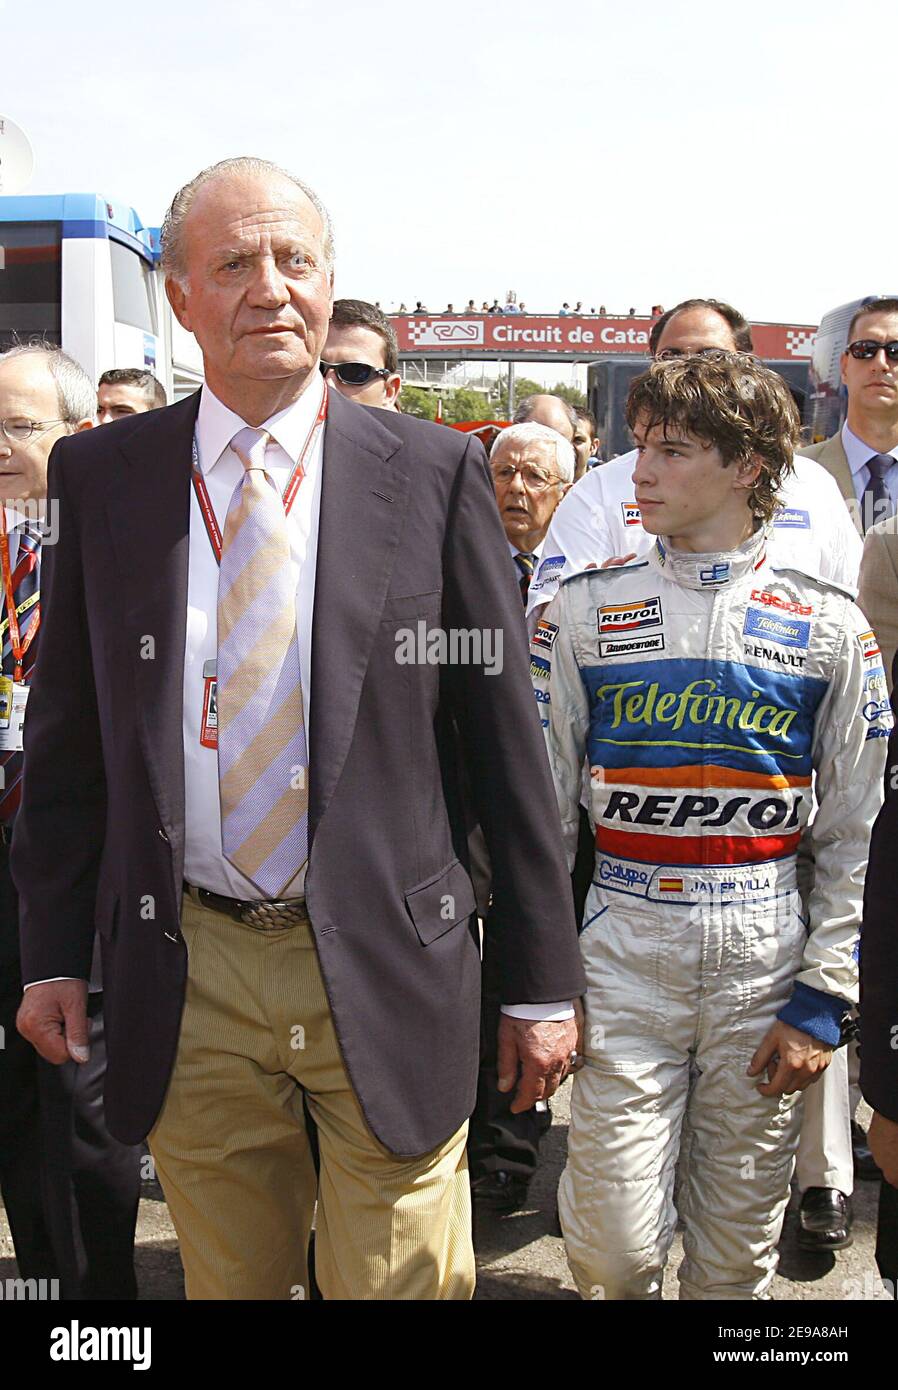 Re Juan Carlos di Spagna cammina nel paddock con il pilota spagnolo della GP2 Javier sola durante la sua visita al Gran Premio di Formula 1 spagnolo che si tiene sulla pista Catalunya vicino a Barcellona, Spagna, il 14 maggio 2006. Foto di Patrick Bernard/ABACAPRESS.COM Foto Stock